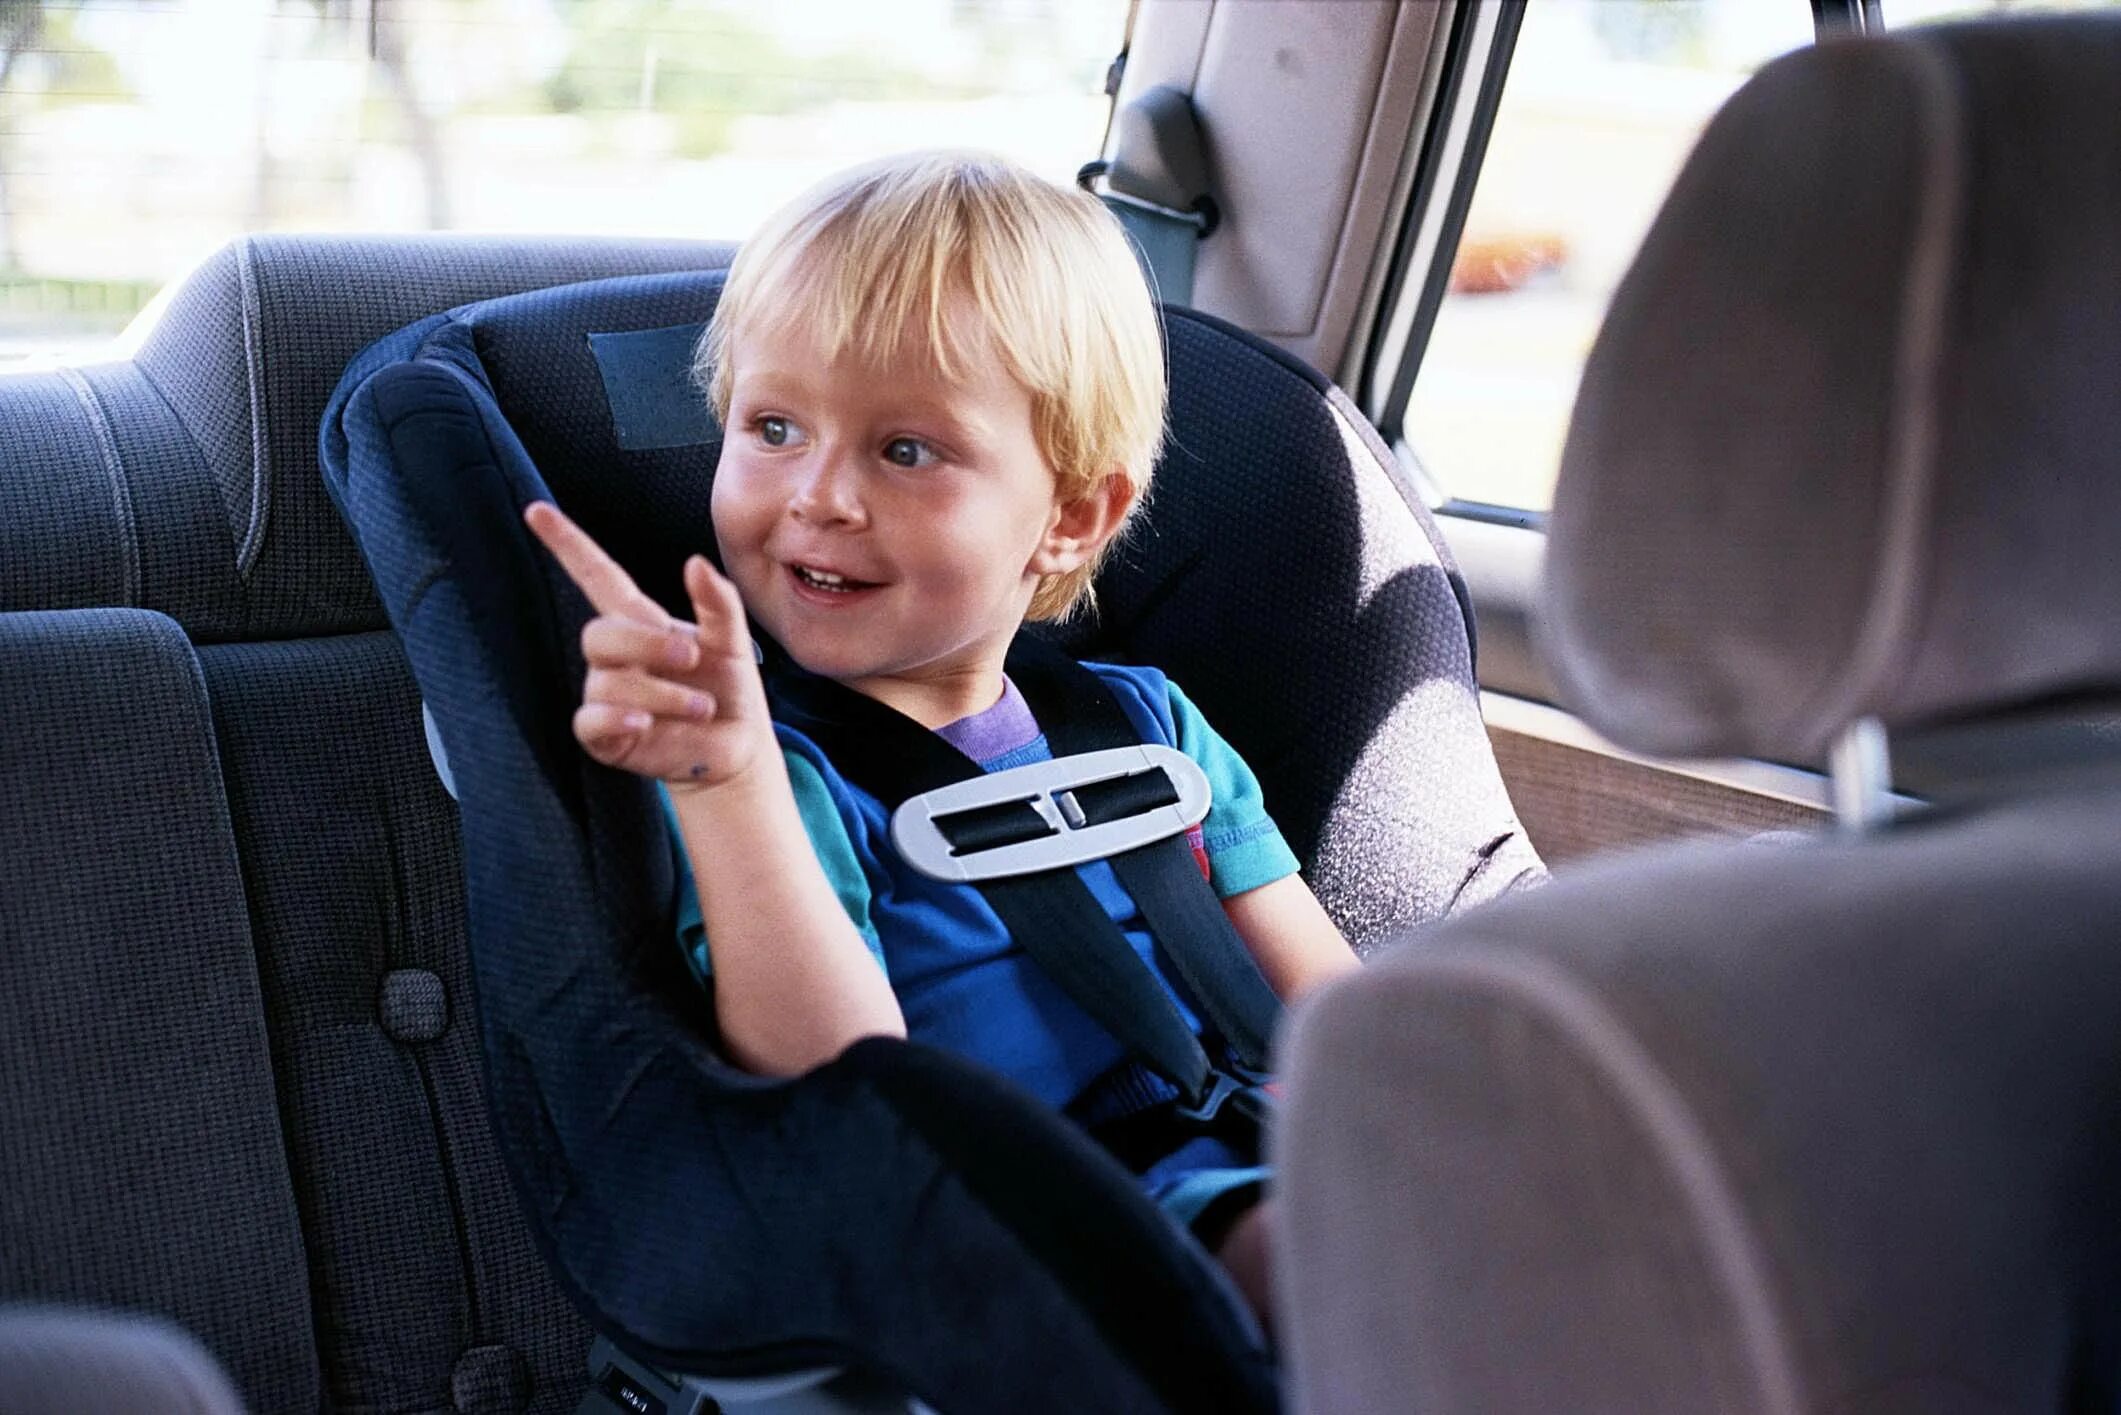 Детское такси сопровождение. Детские кресла в такси. Ремень безопасности для детей. Ребенок в кресле. Автоняня для ребенка.